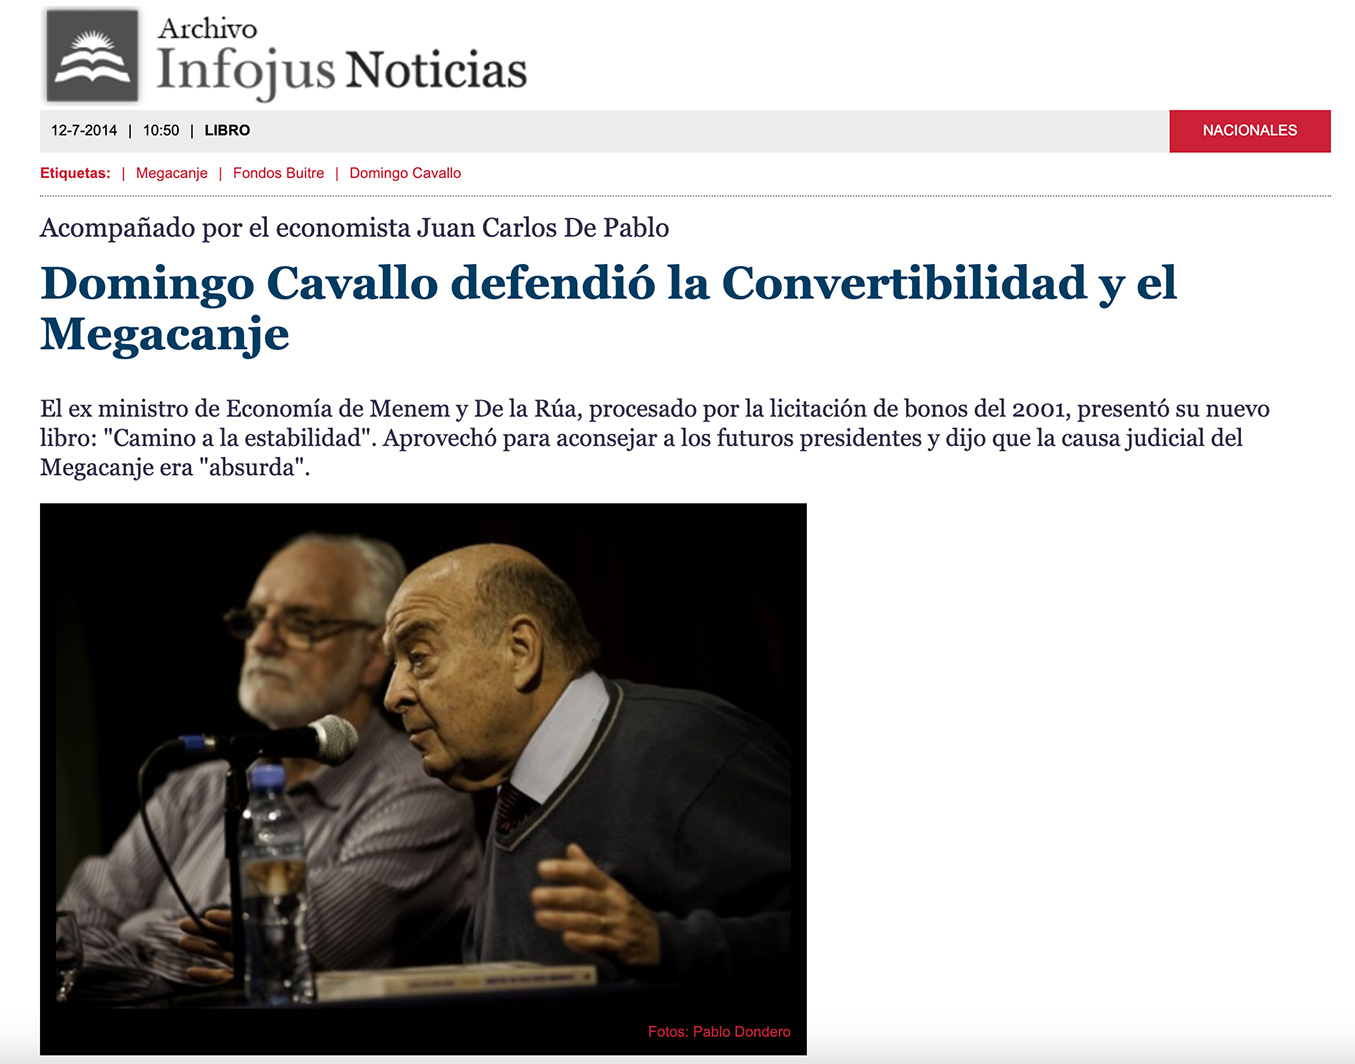 Publicación Infojus Noticias. Título: “Domingo Cavallo defendió la Convertibilidad y el Megacanje” 12 de Julio de 2014. Domingo Cavallo dando una conferencia de prensa en la presentación de su libro.